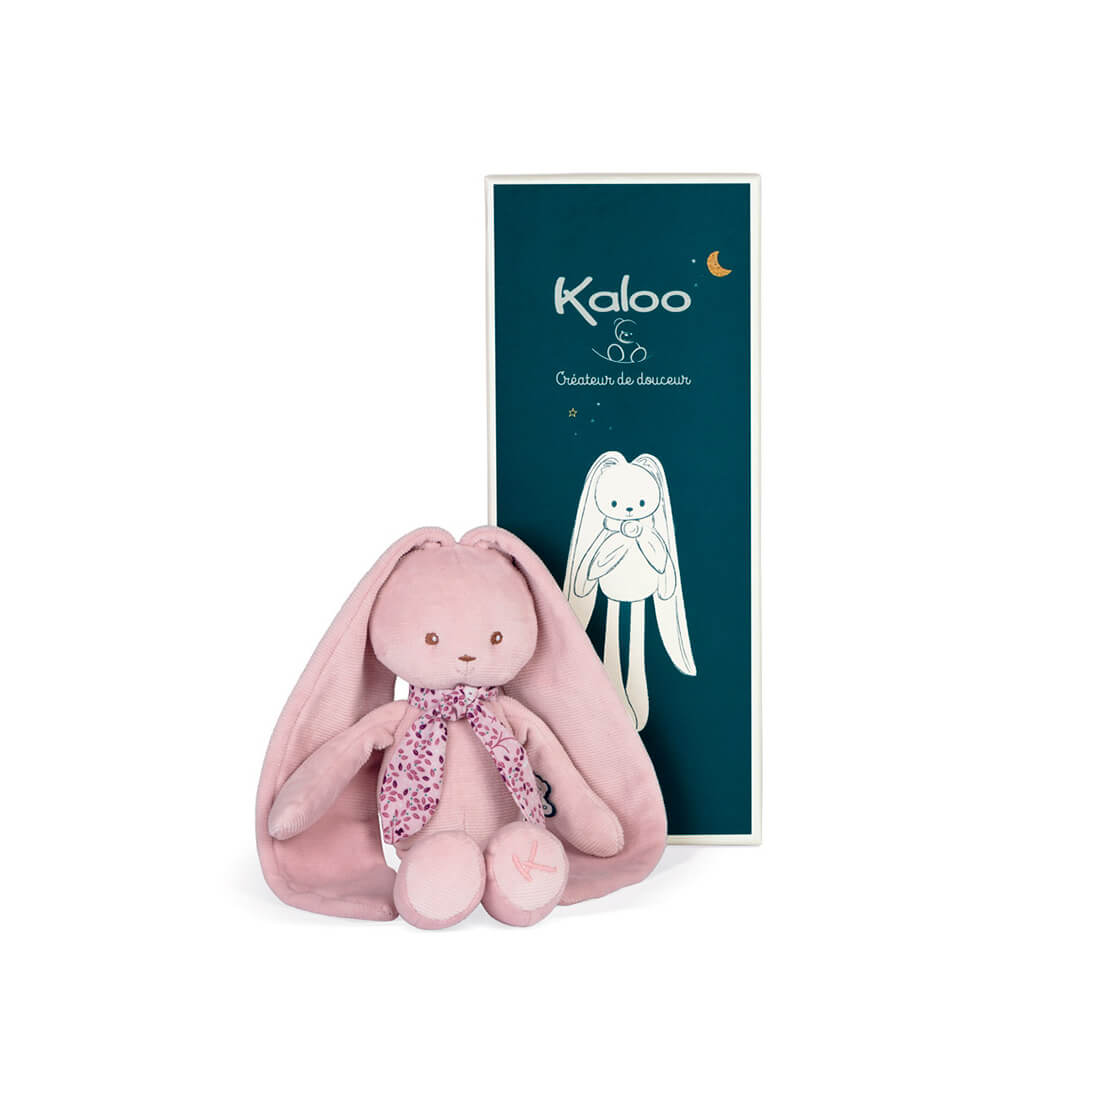 Мягкая игрушка Kaloo "Кролик", серия "Lapinoo", розовый, средний, 35 см - фото №1